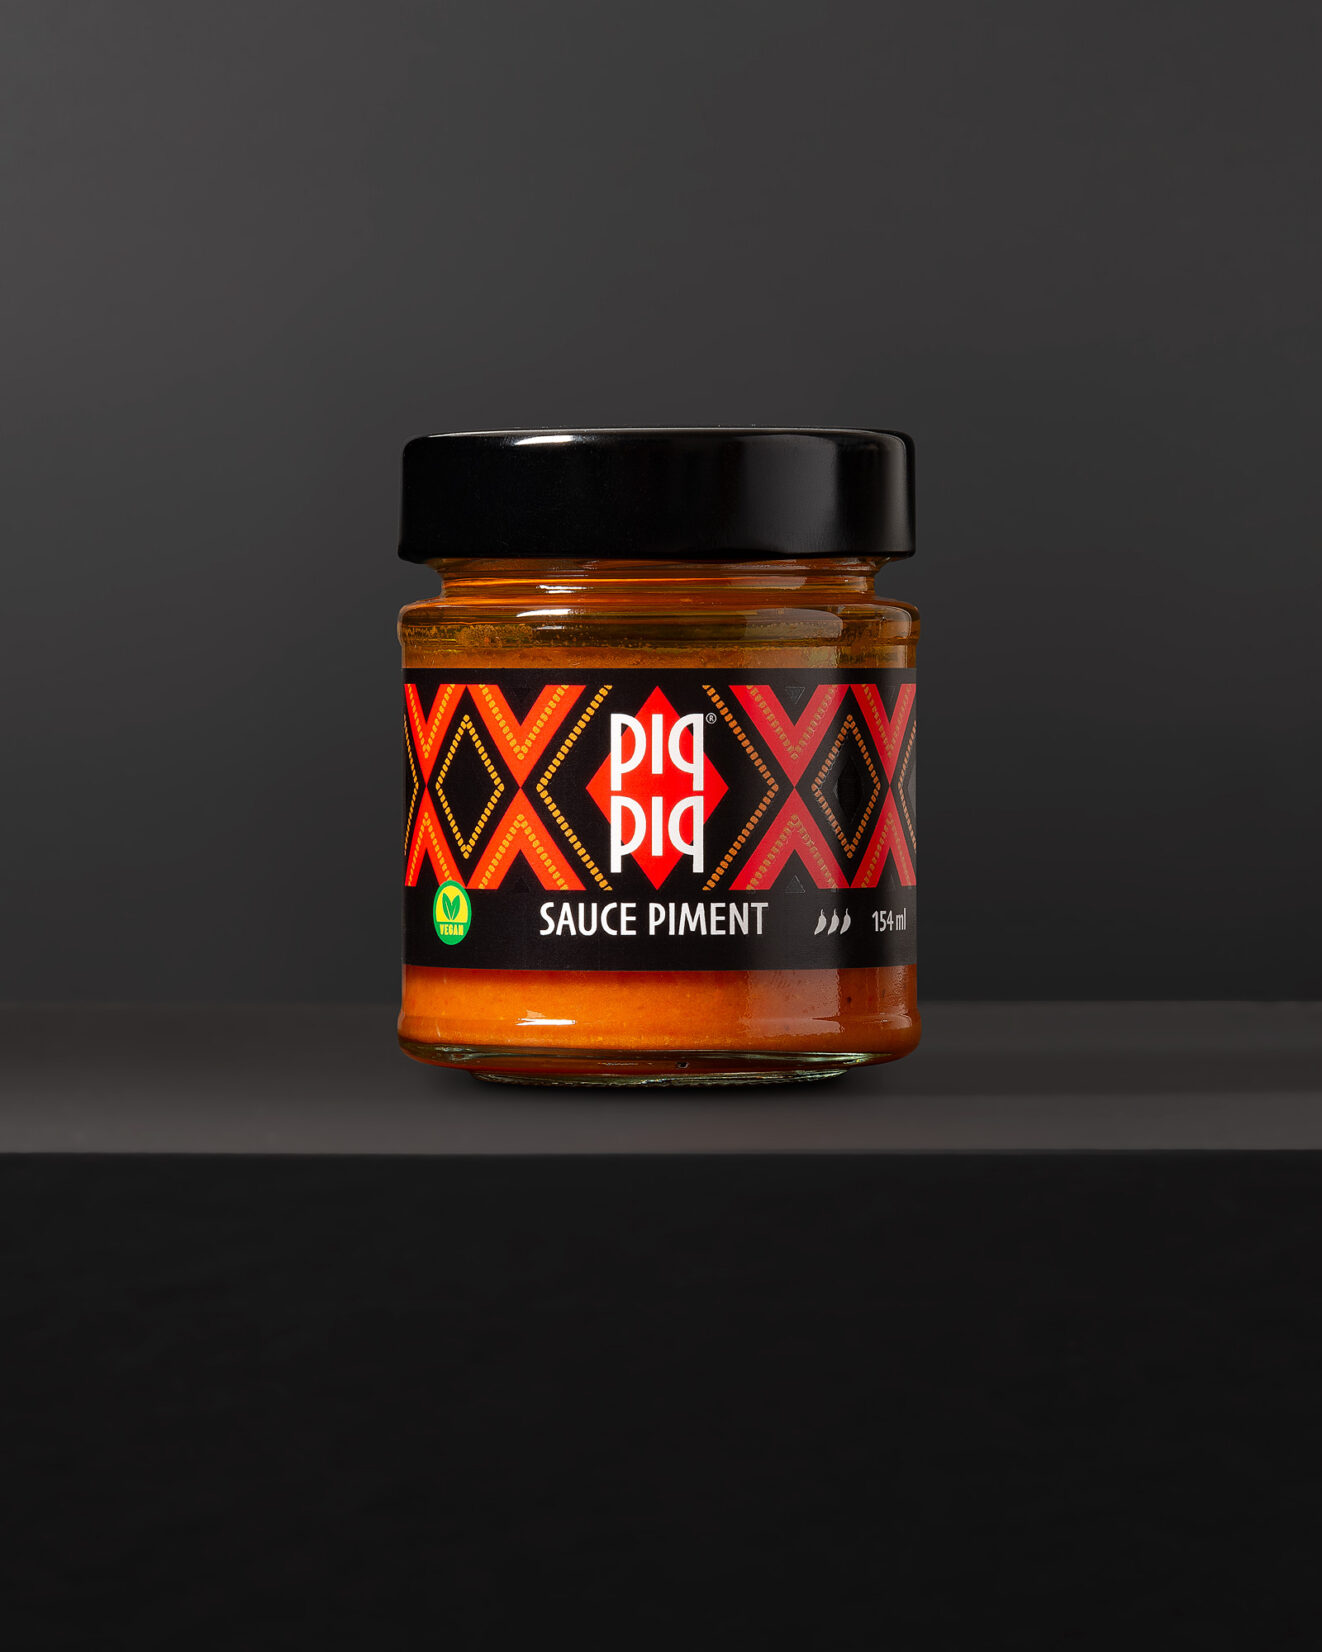 Pack-Shot einer von Grafikdesign Cueni gestalteten Verpackung des Brands Piq-Piq Piment.